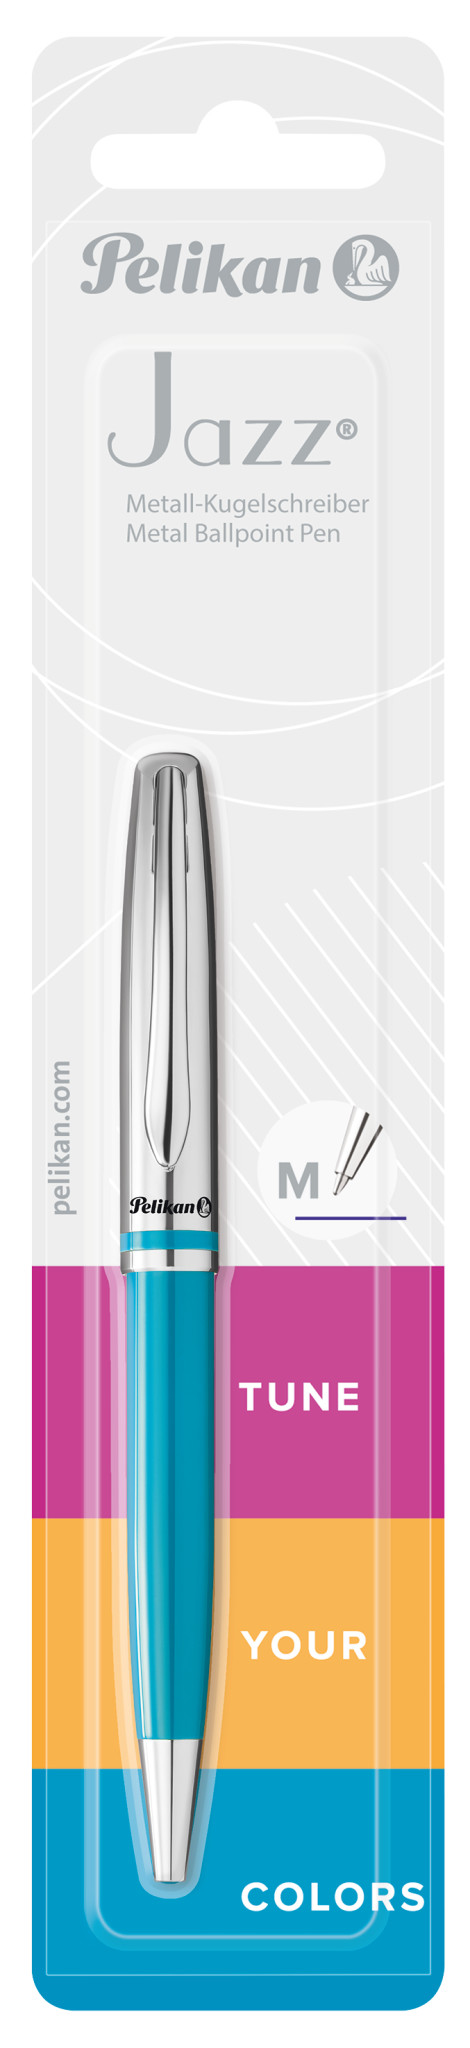 Pelikan Jazz Classic K35 - Clip - Kugelschreiber mit Druckeinzugsmechanik - Nachfüllbar - Blau - 1 Stück(e) - Medium